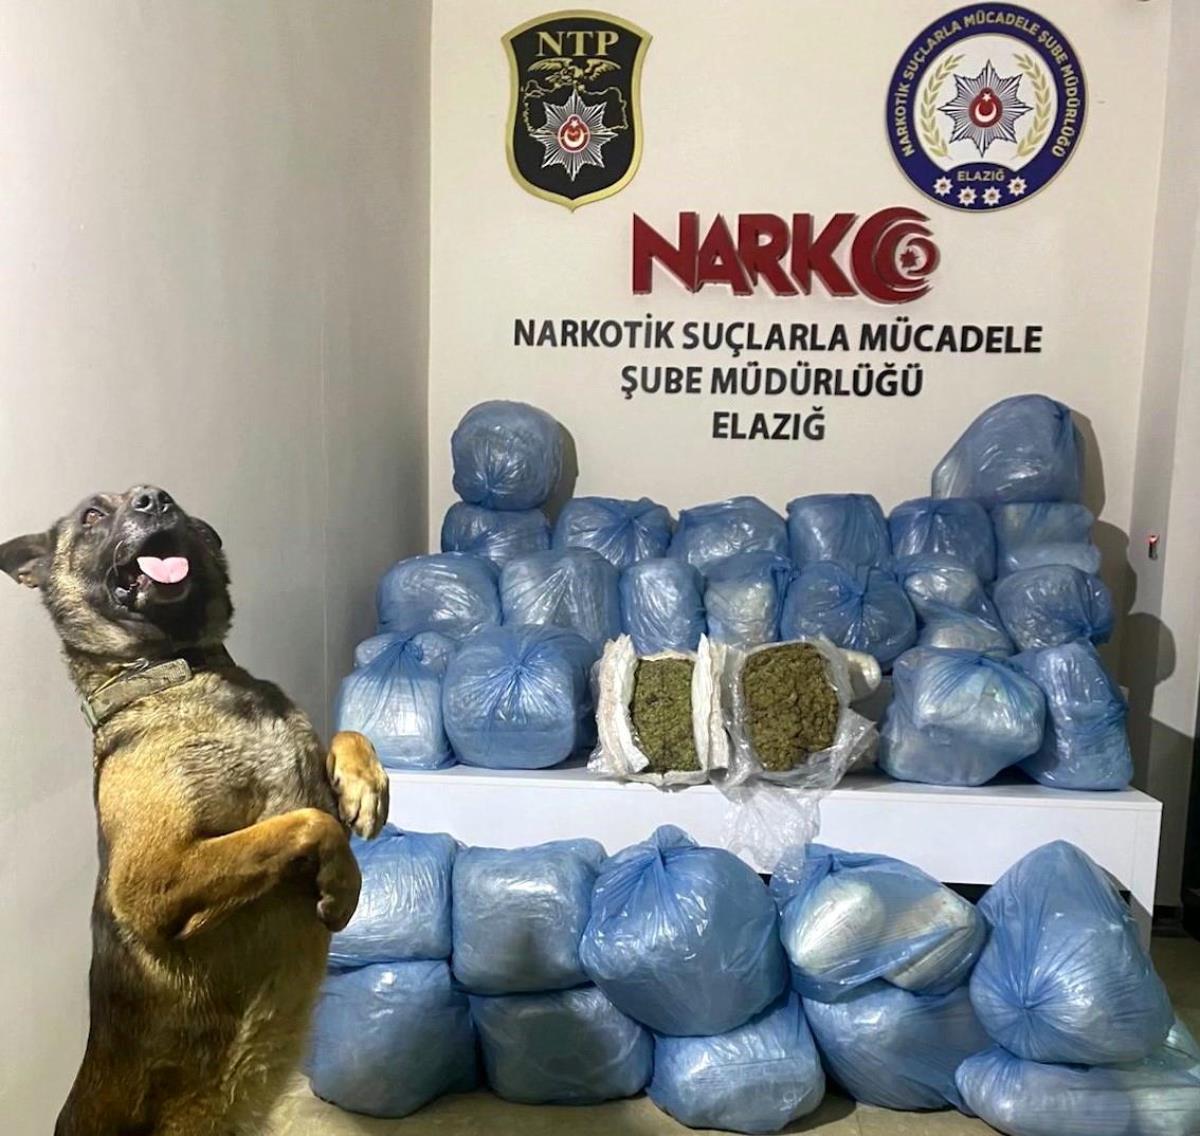 Elazığ'da 123 kilo uyuşturucu husus ele geçirildi: 11 tutuklama